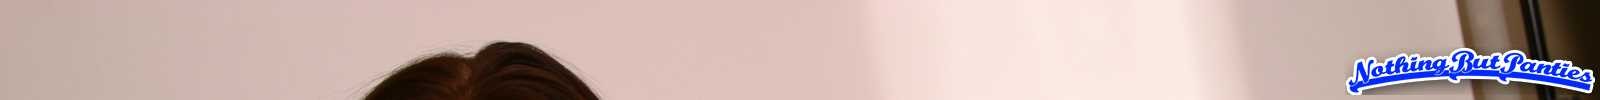 Loni durchsichtige rosa Höschen
 #72634230